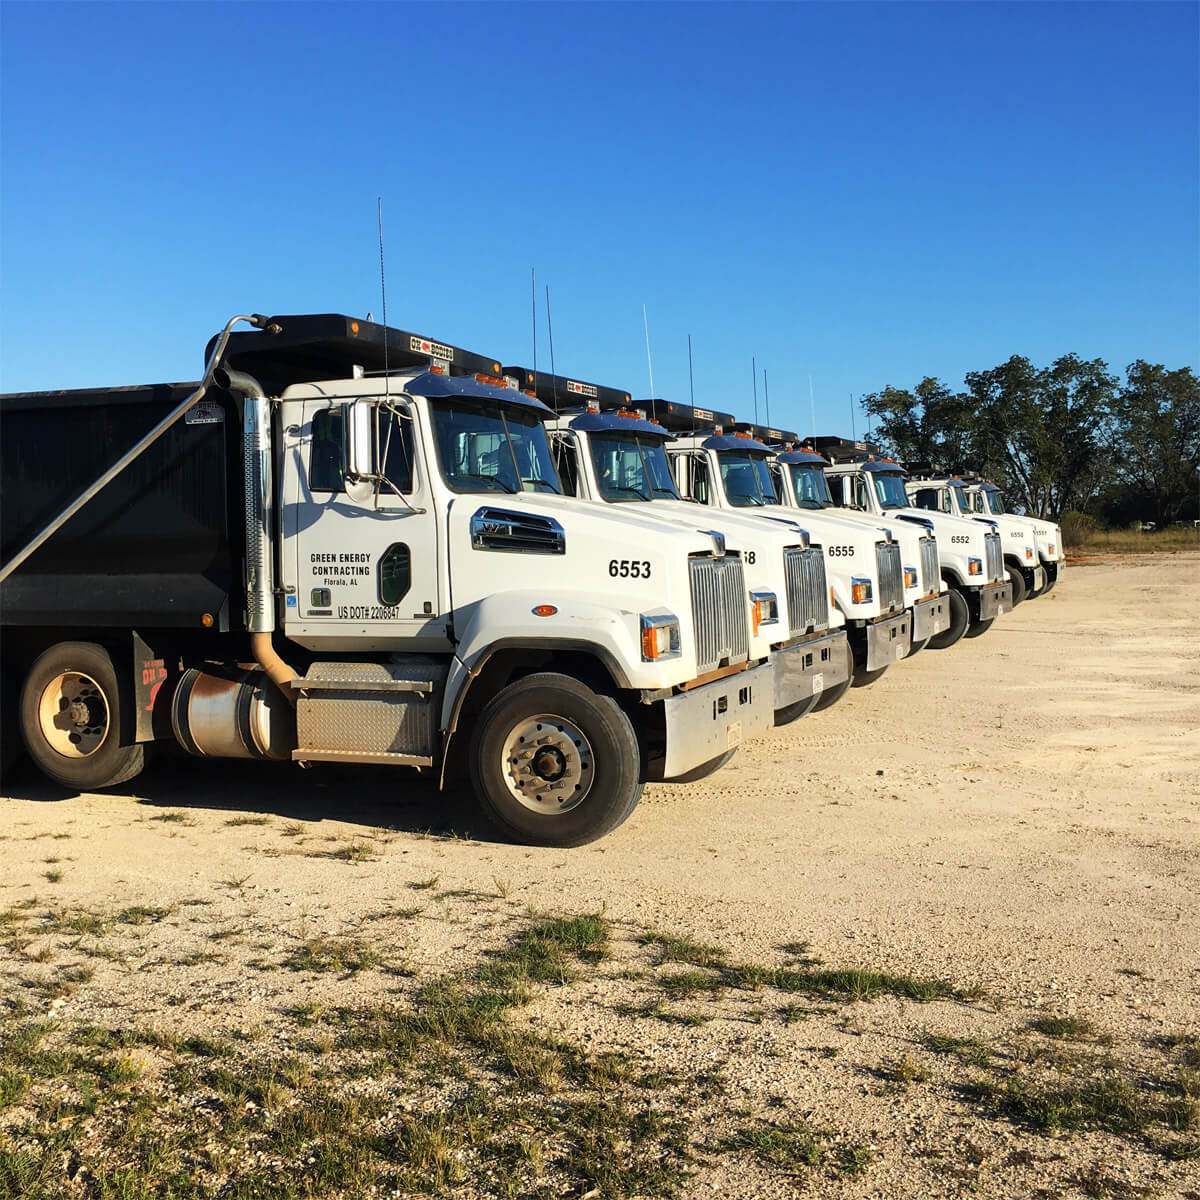 7 of GEC's dump trucks lined up